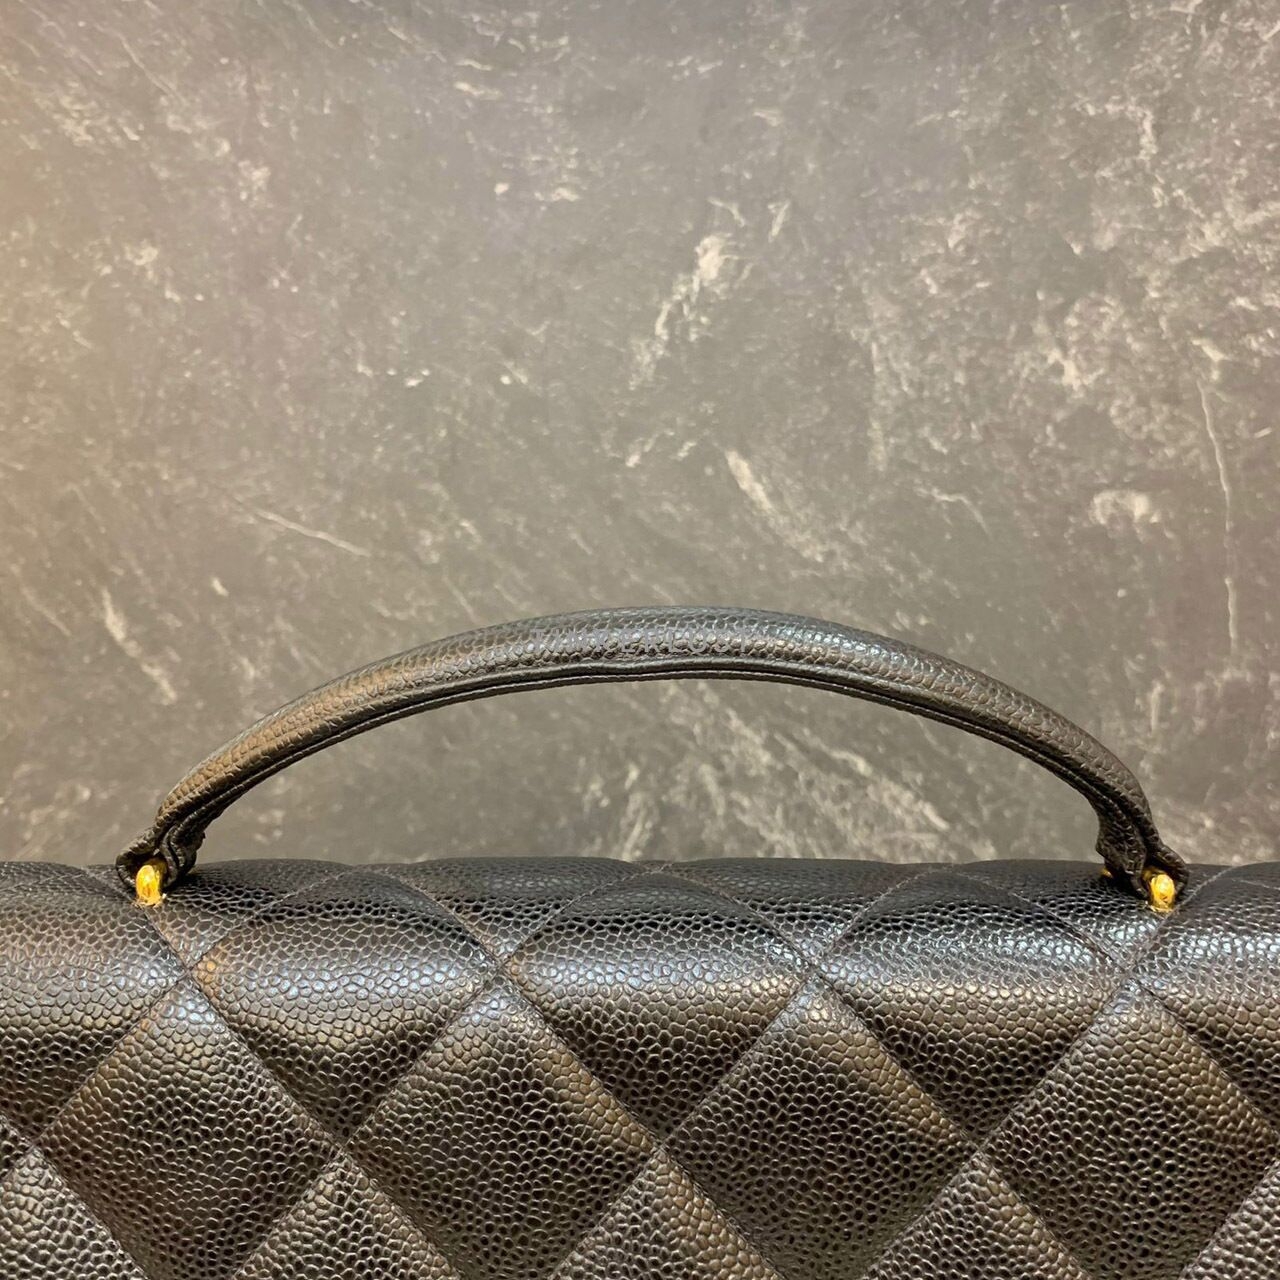 Chanel Briefcase Caviar Black 24k GHW #5 Handbag